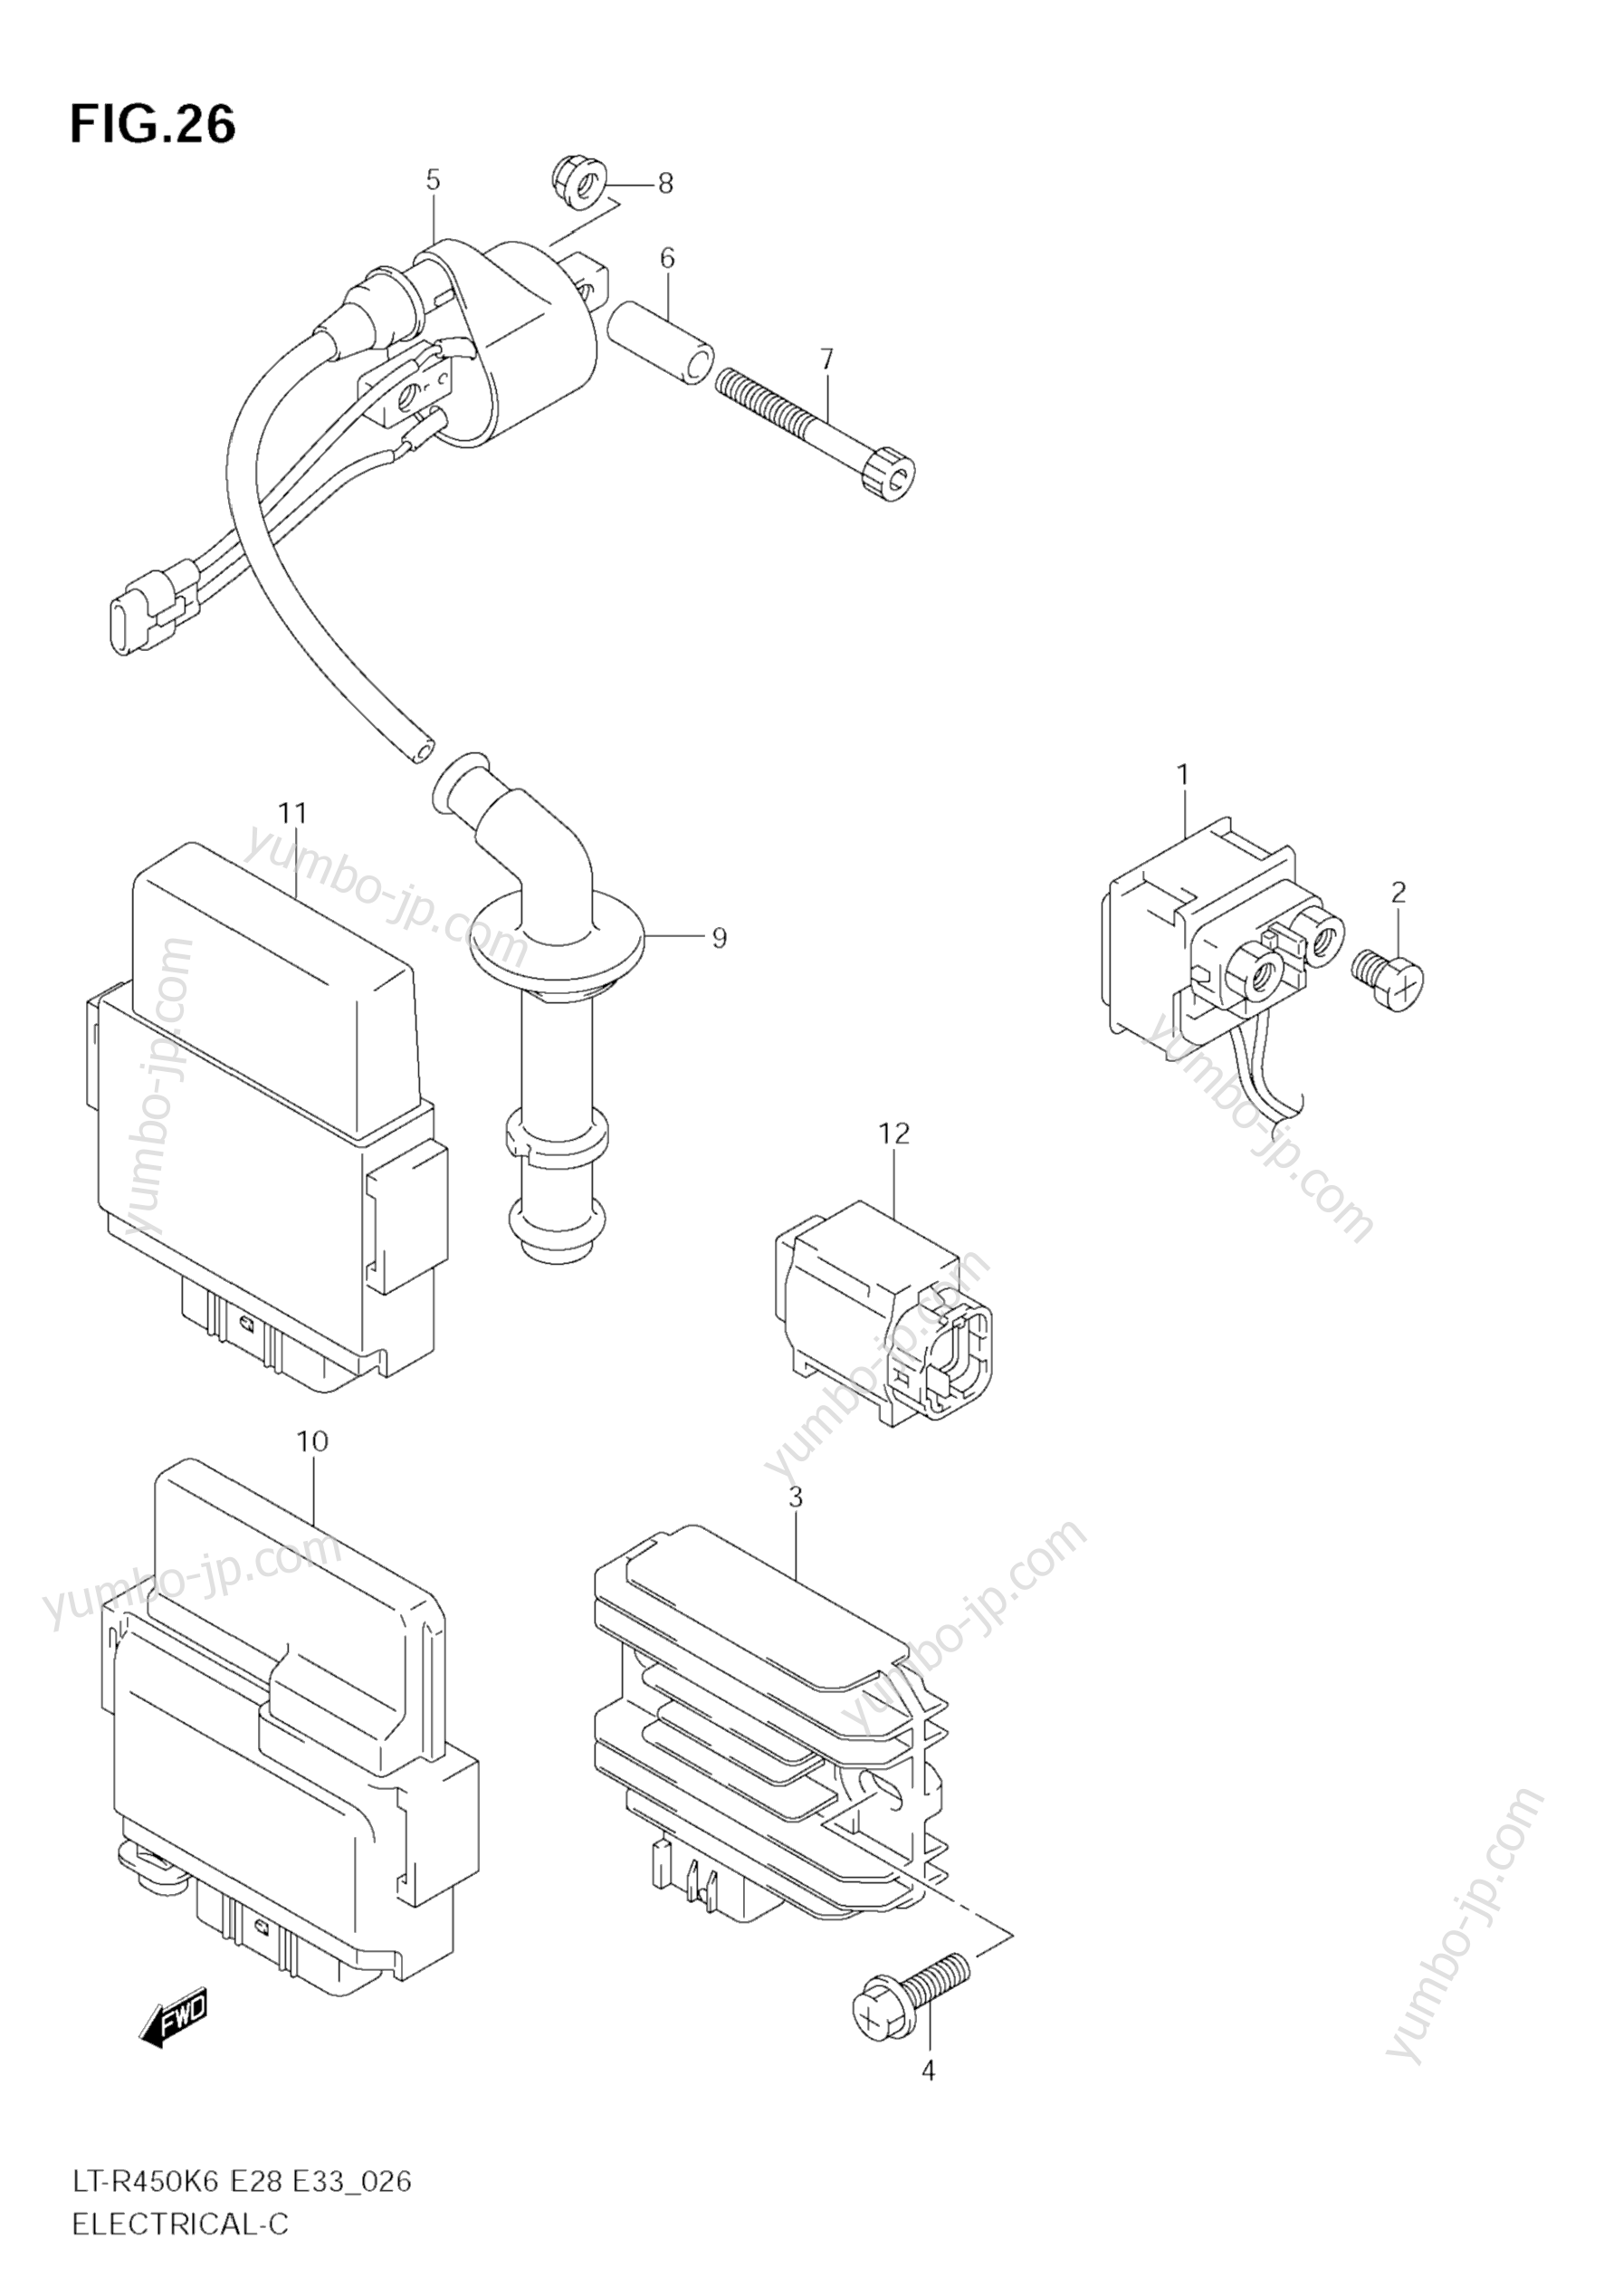 Electrical for ATVs SUZUKI QuadRacer (LT-R450Z) 2008 year